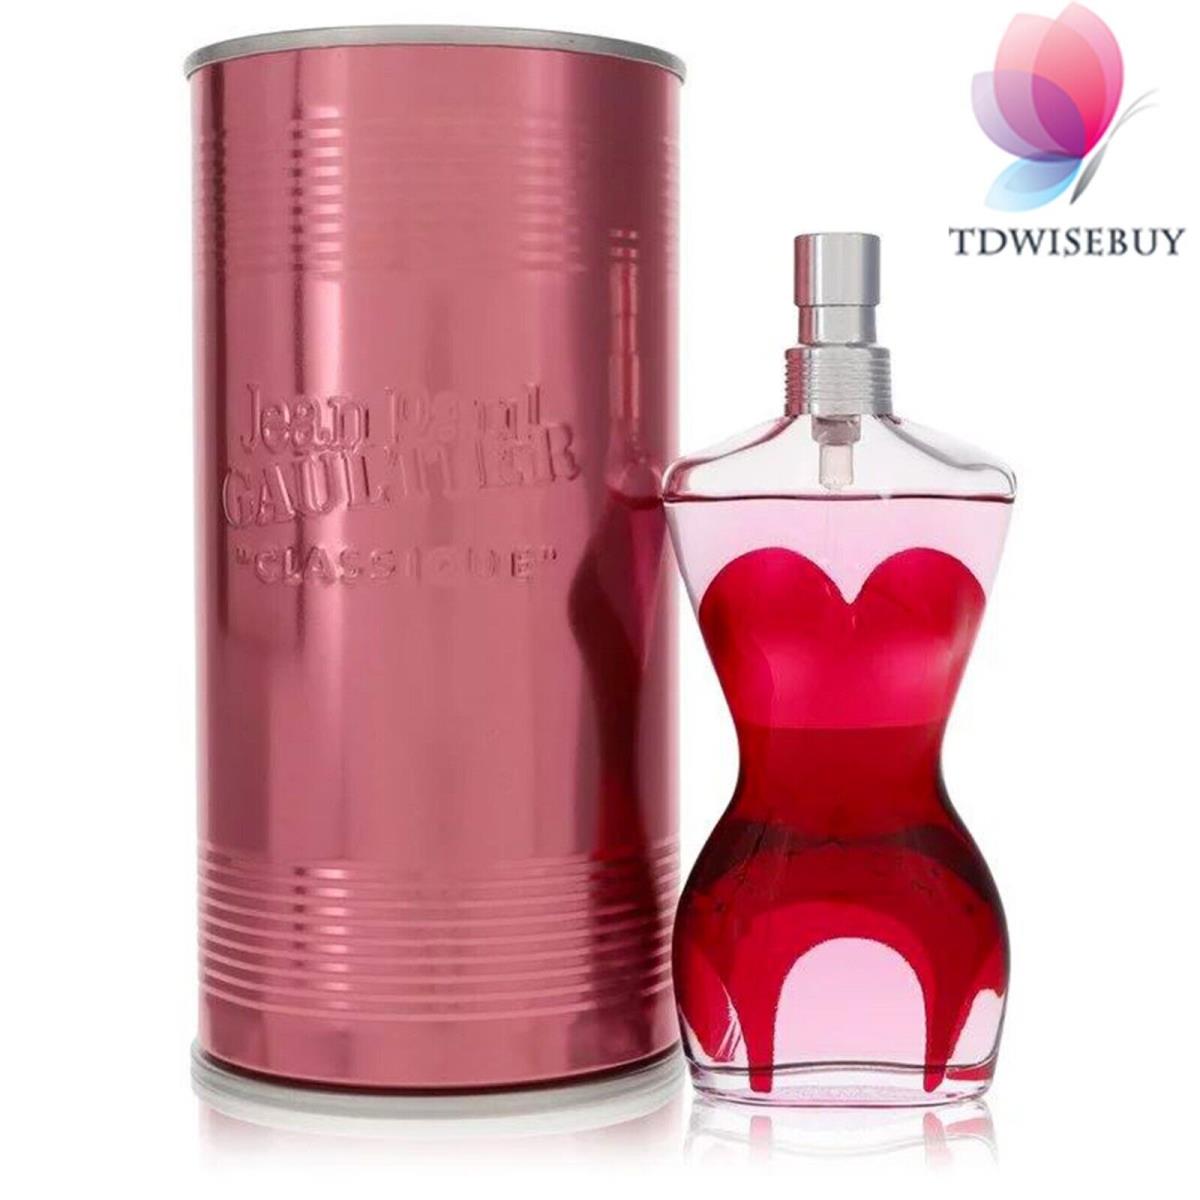 Jean Paul Gaultier Perfume Women by Jean Paul Gaultier Edp Spray 1.7 oz 50 ml